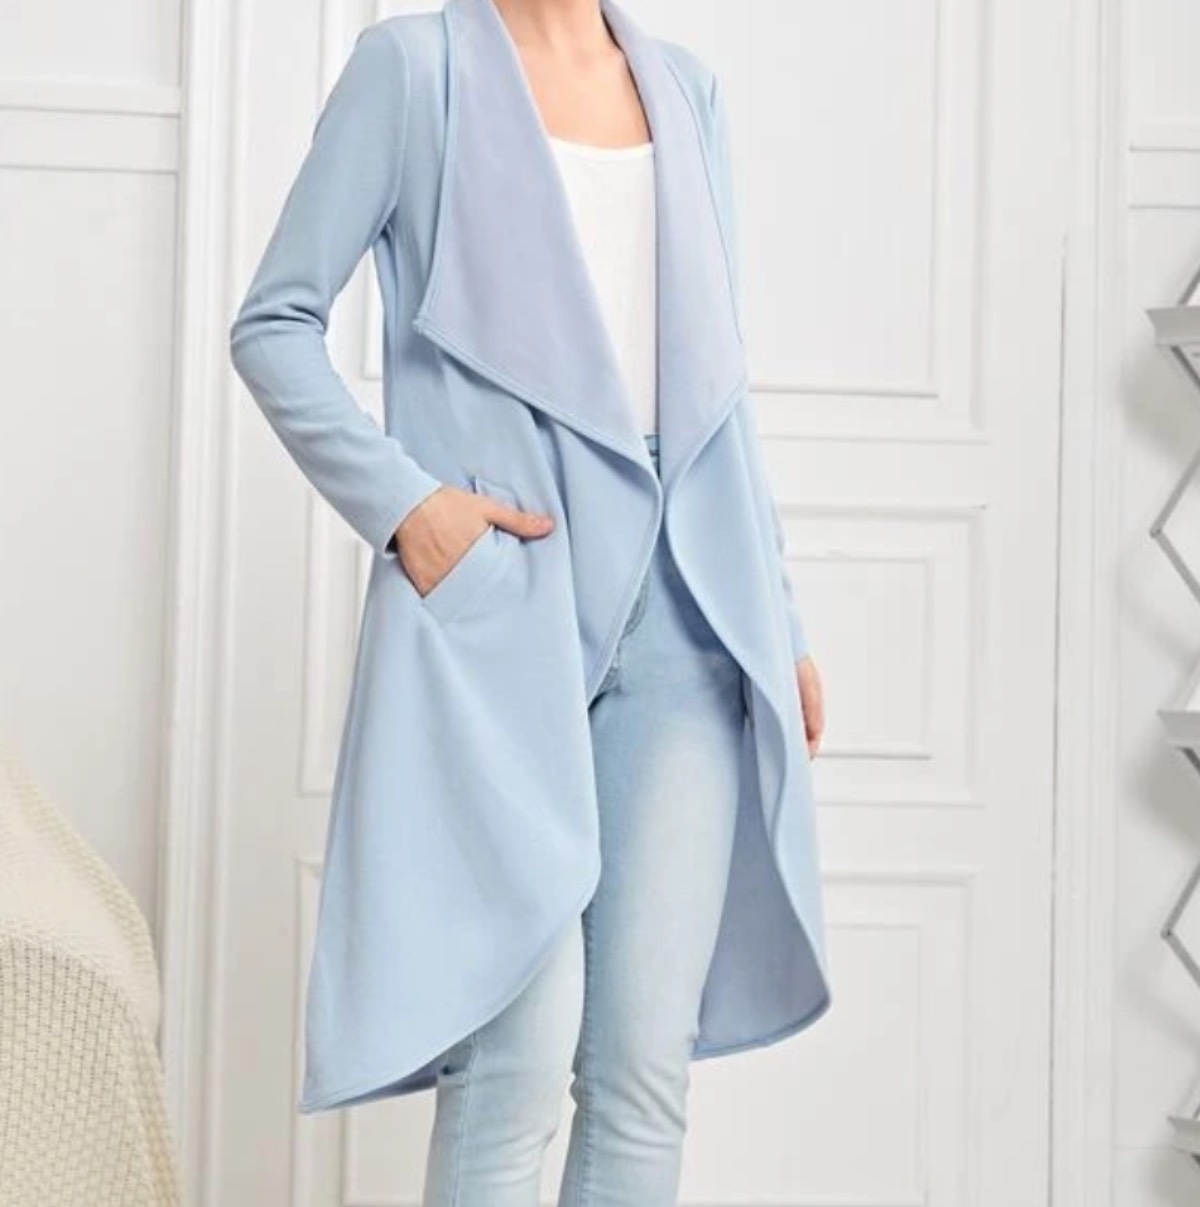 Reina Sofía abrigo azul